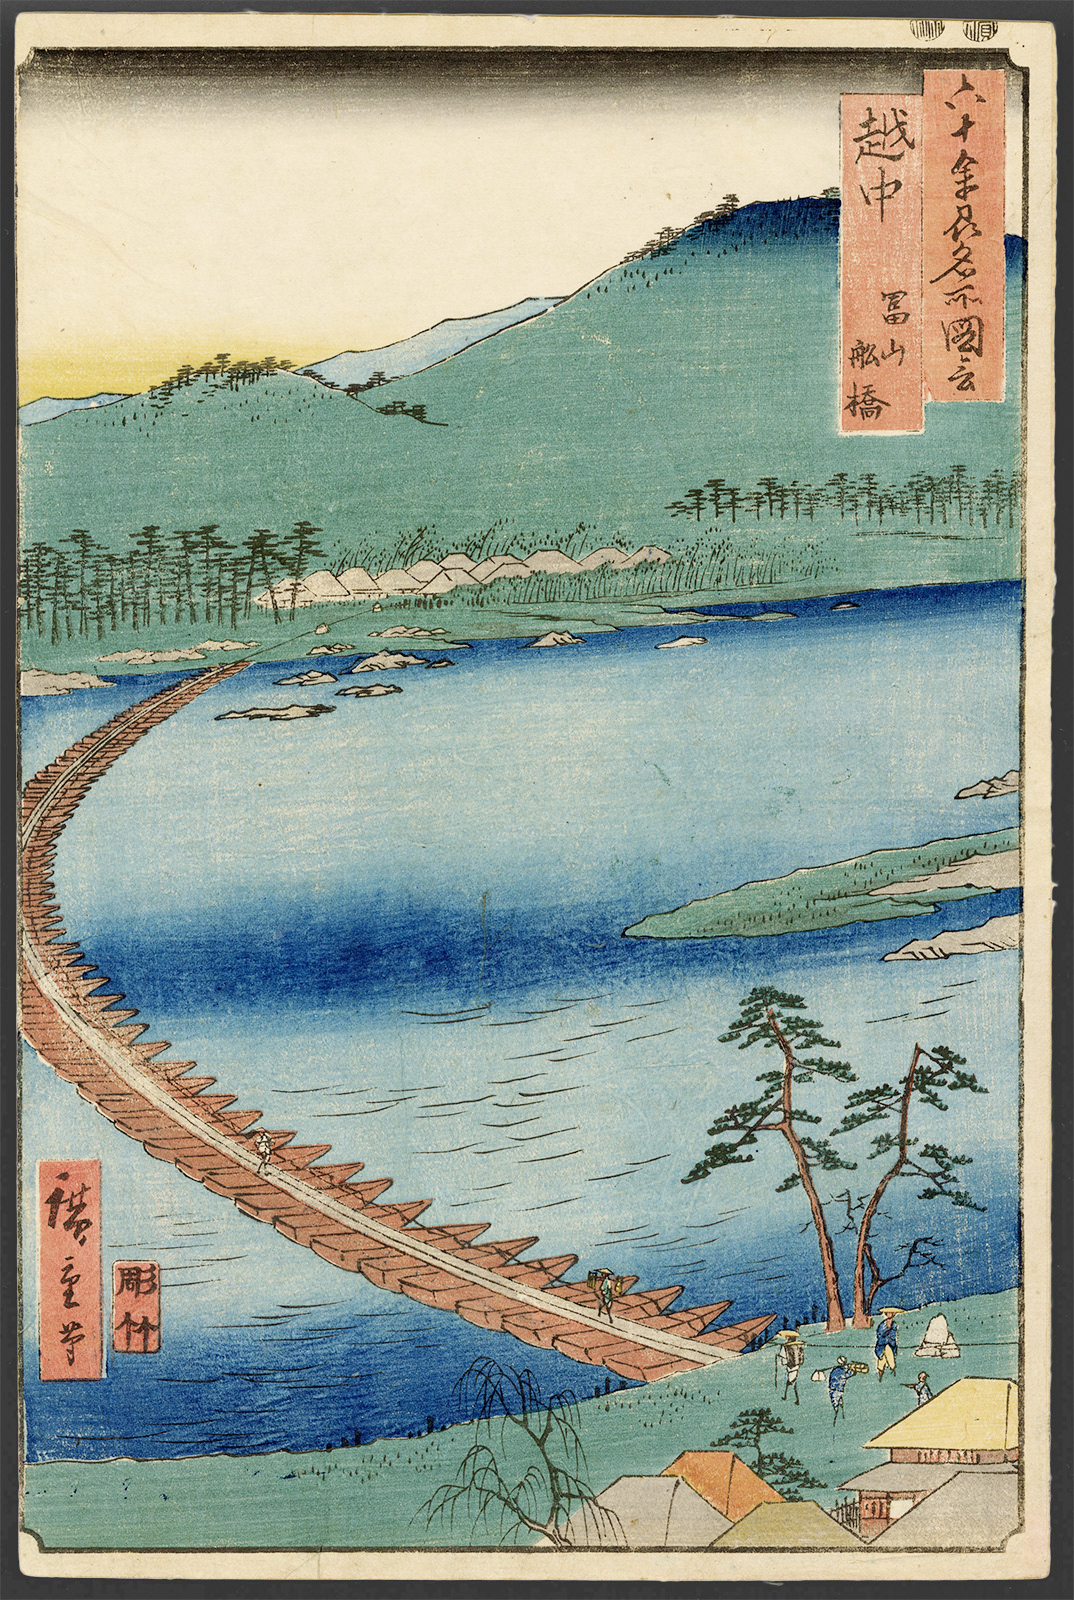 広重 / Hiroshige「六十余州名所図会 越中 富山船橋」